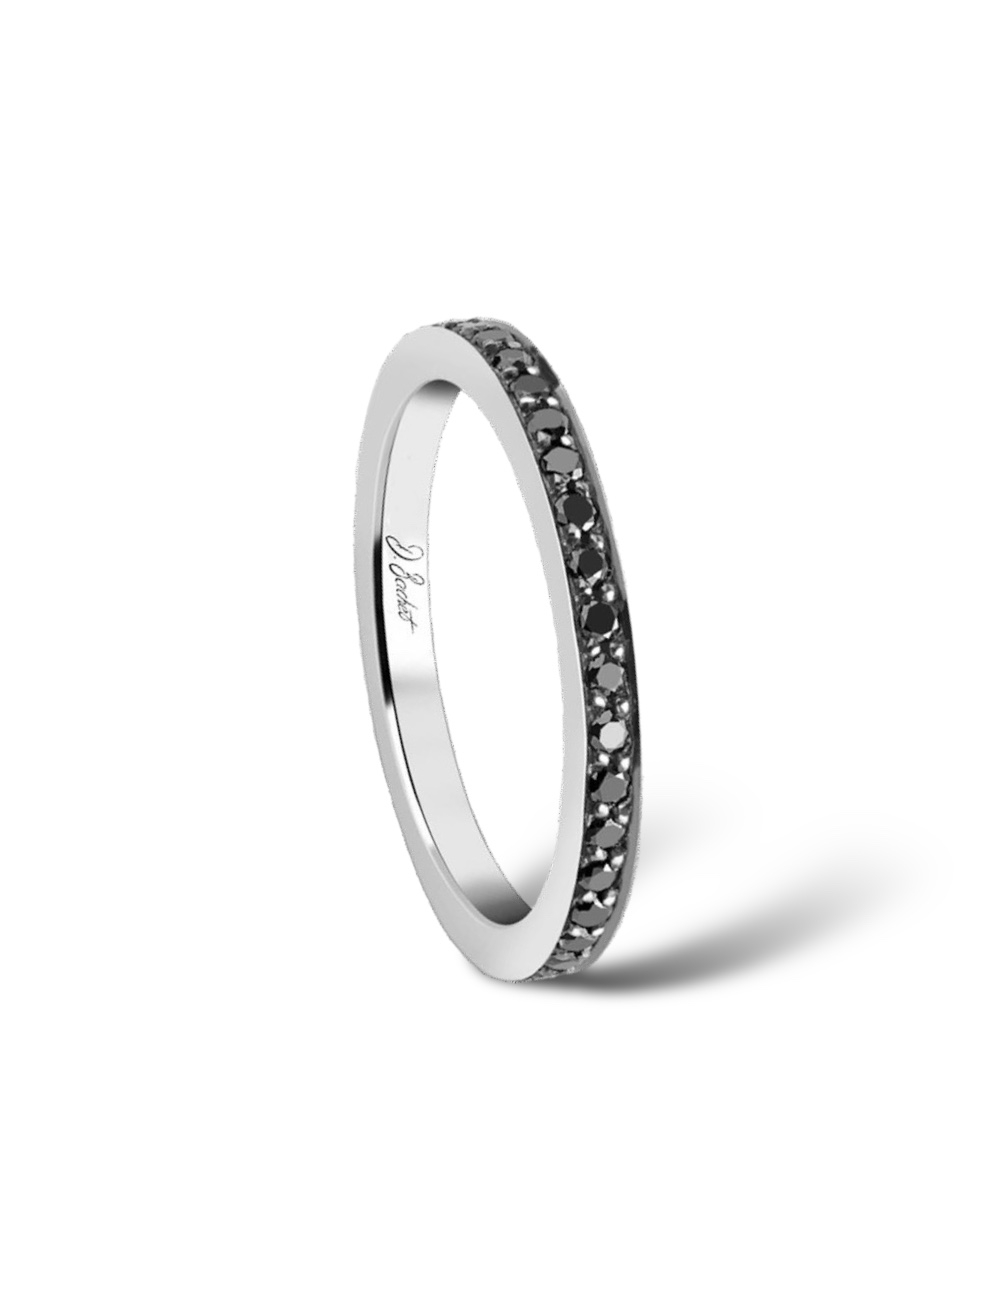 Alliance femme platine ornée de diamants noirs scintillants sur tout le tour de l'anneau, reflétant élégamment la lumière.